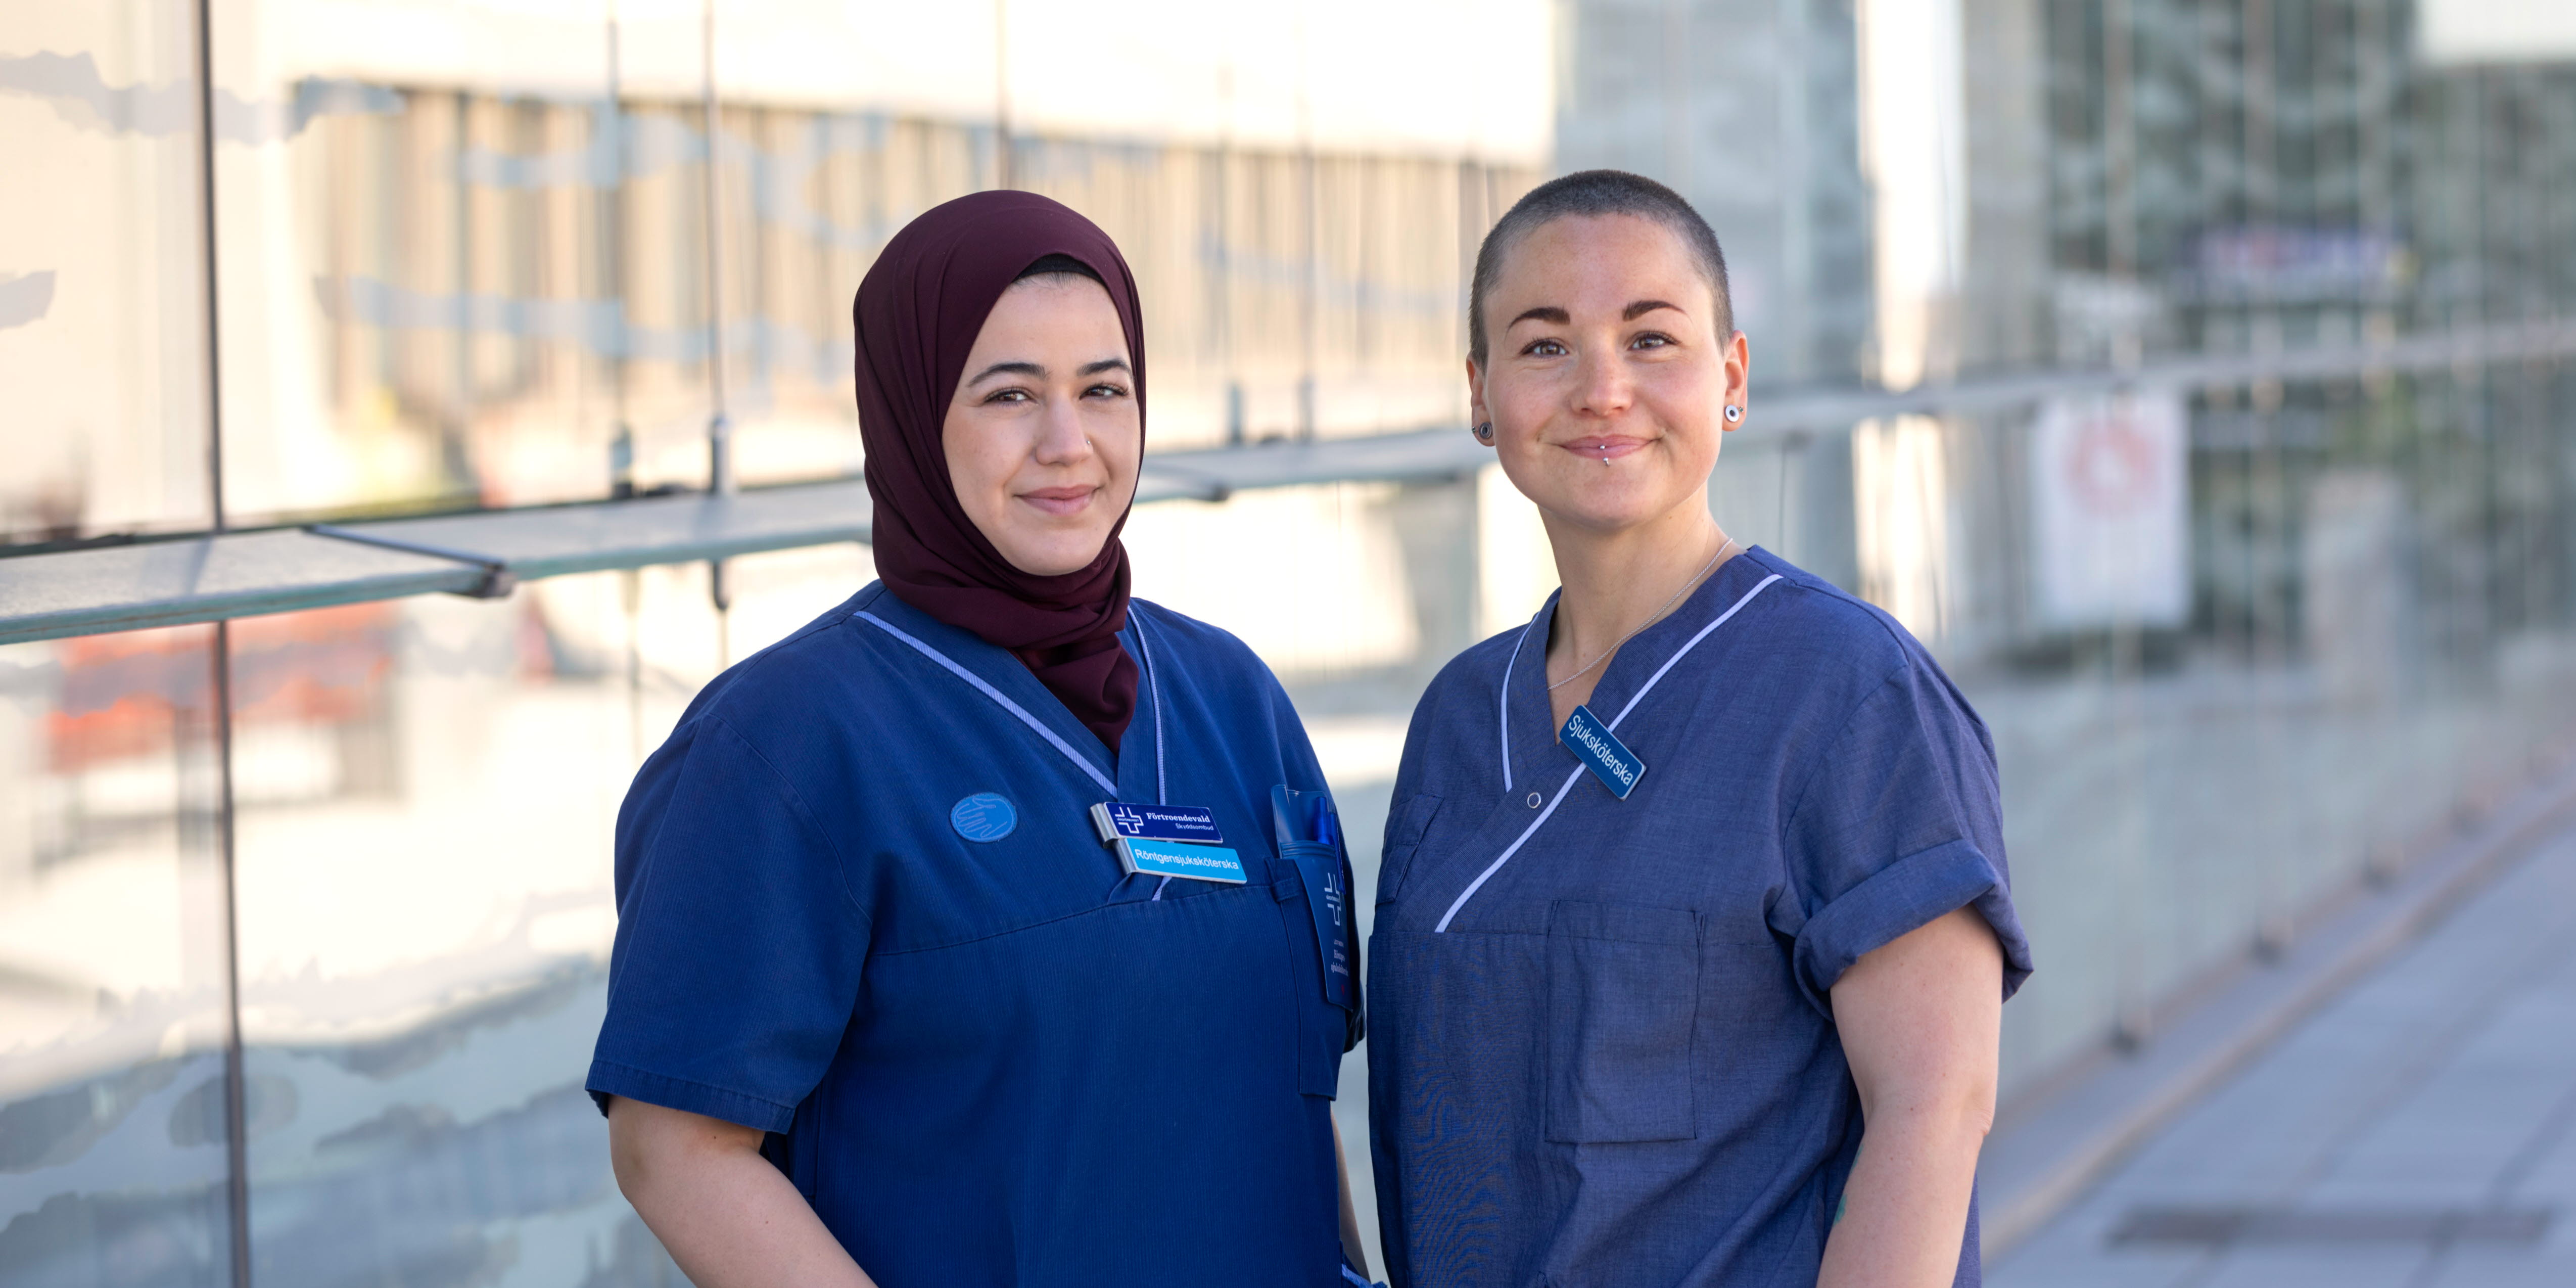 Två röntgensjuksköterskor i blå arbetskläder står utanför ett sjukhus. De ser glada ut och tittar in i kameran.